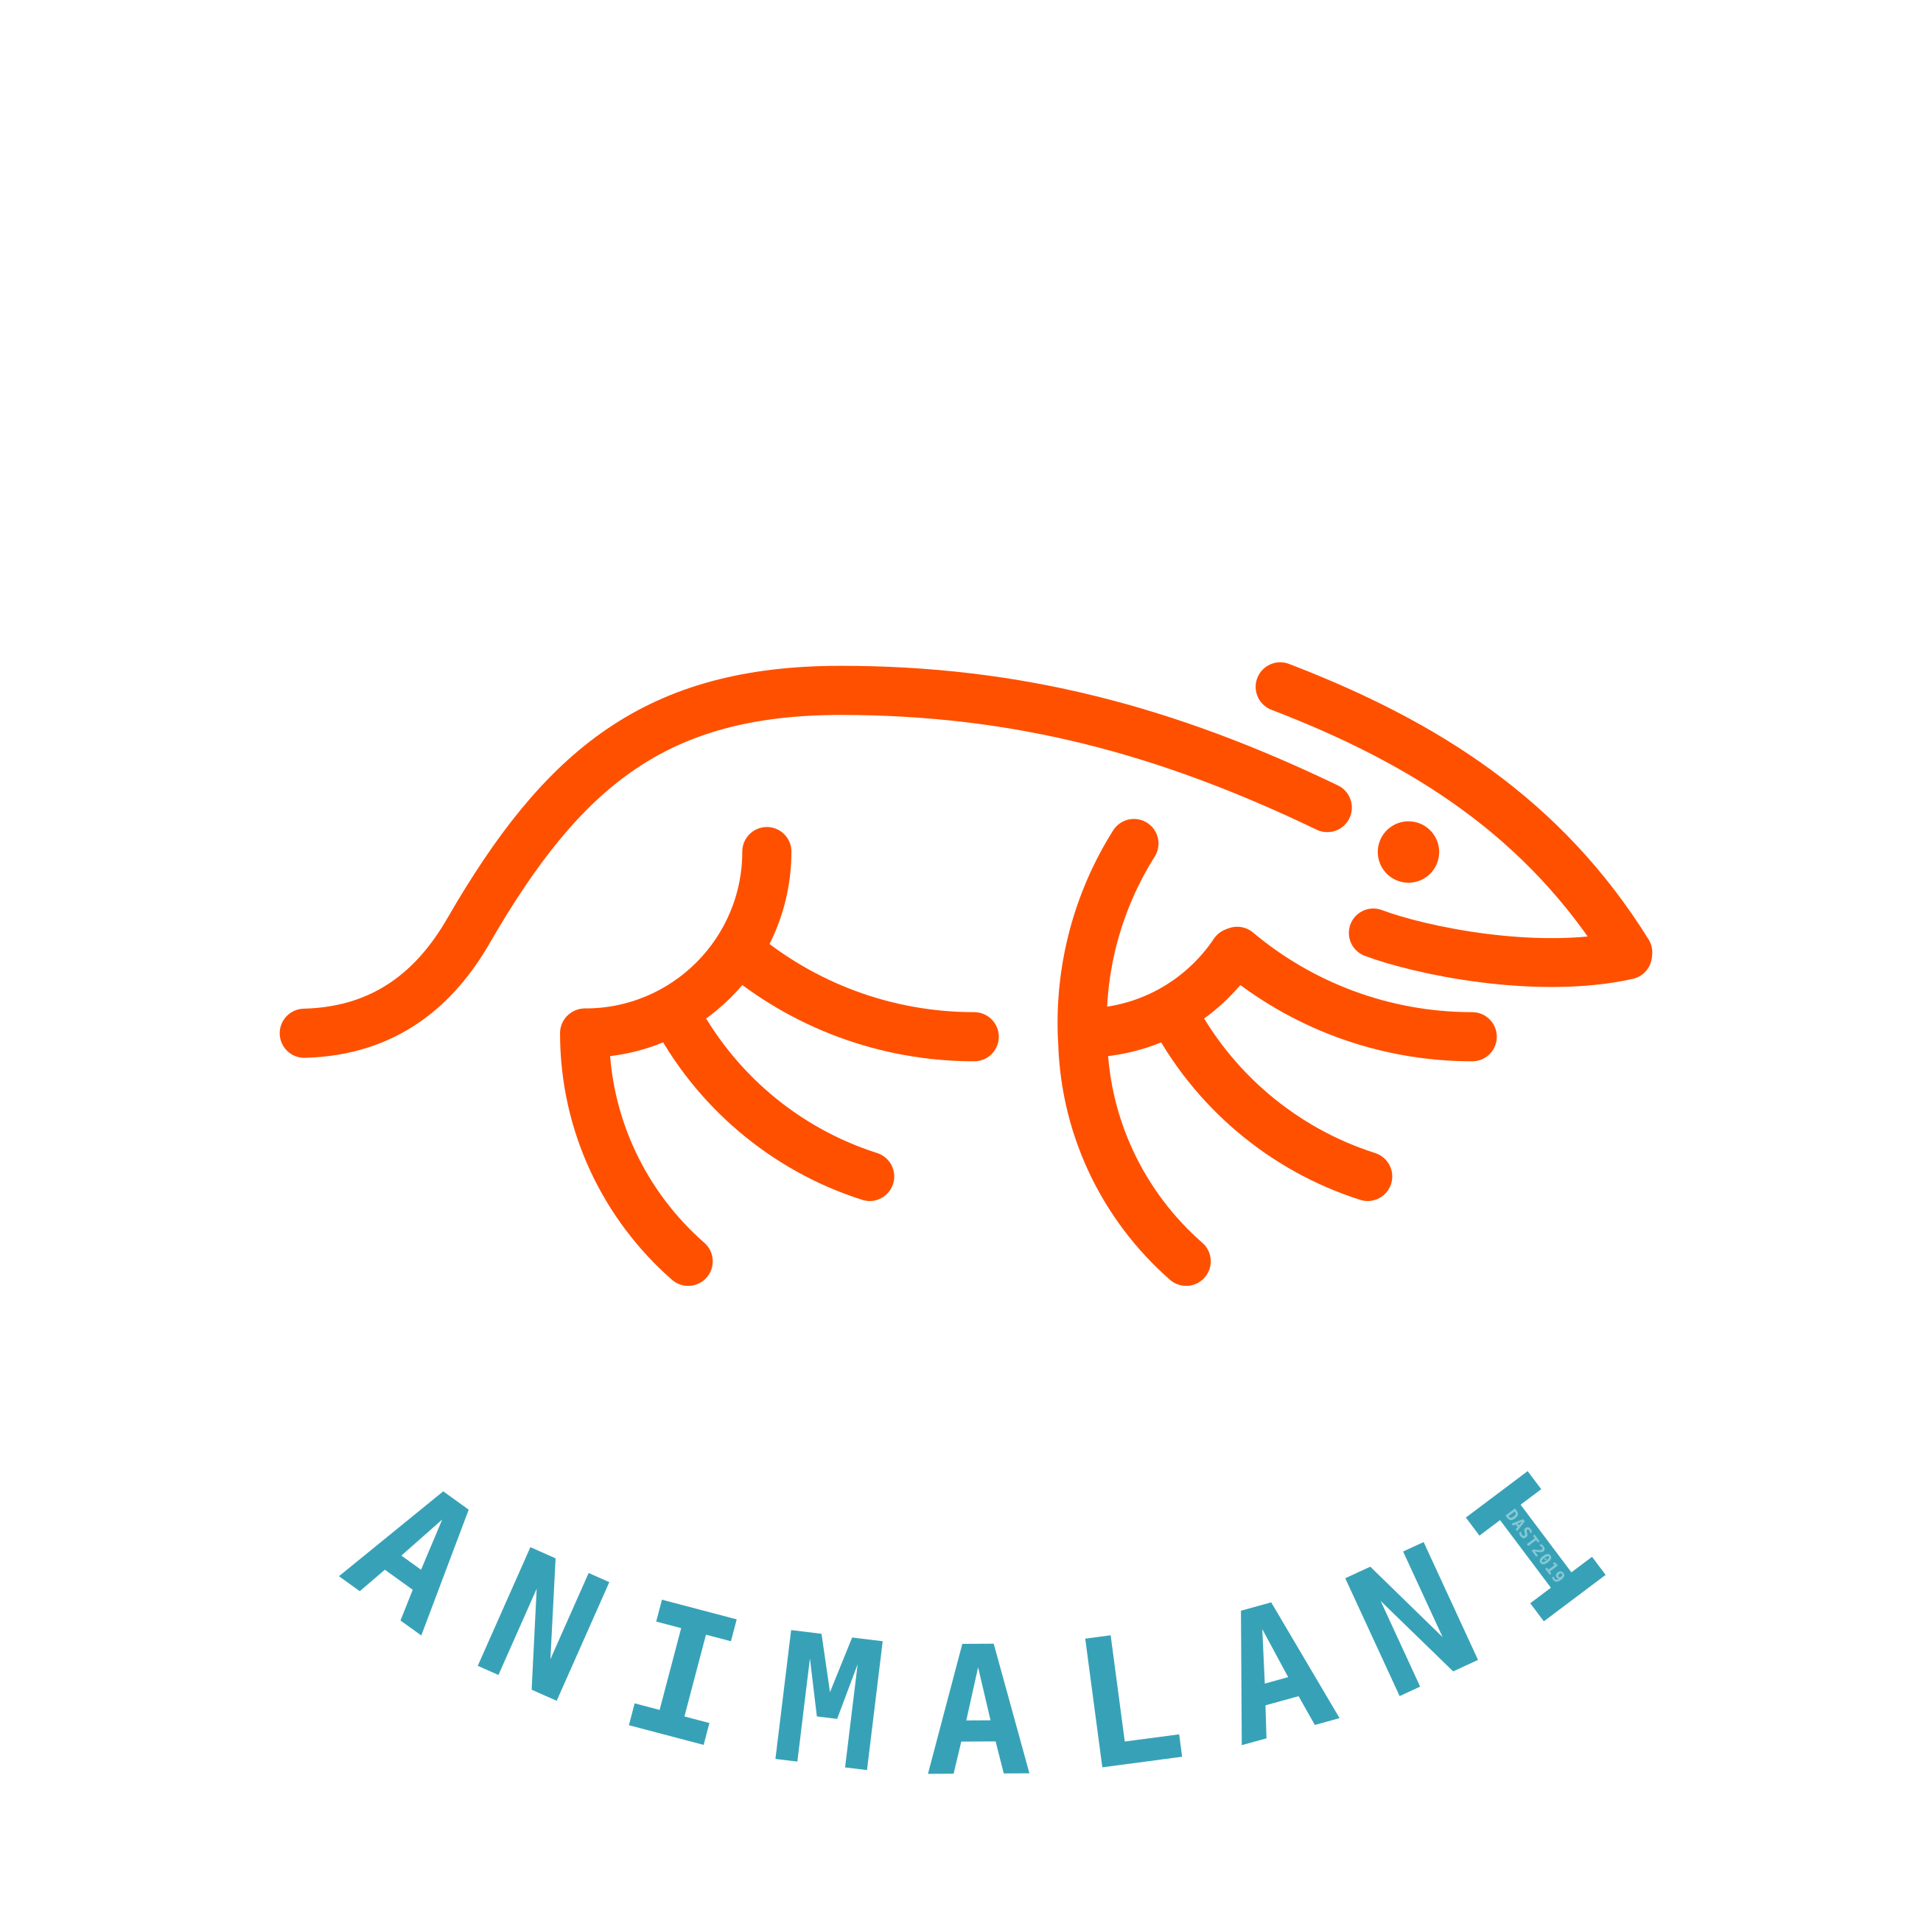 Animalani Malanimal, AST2019/02